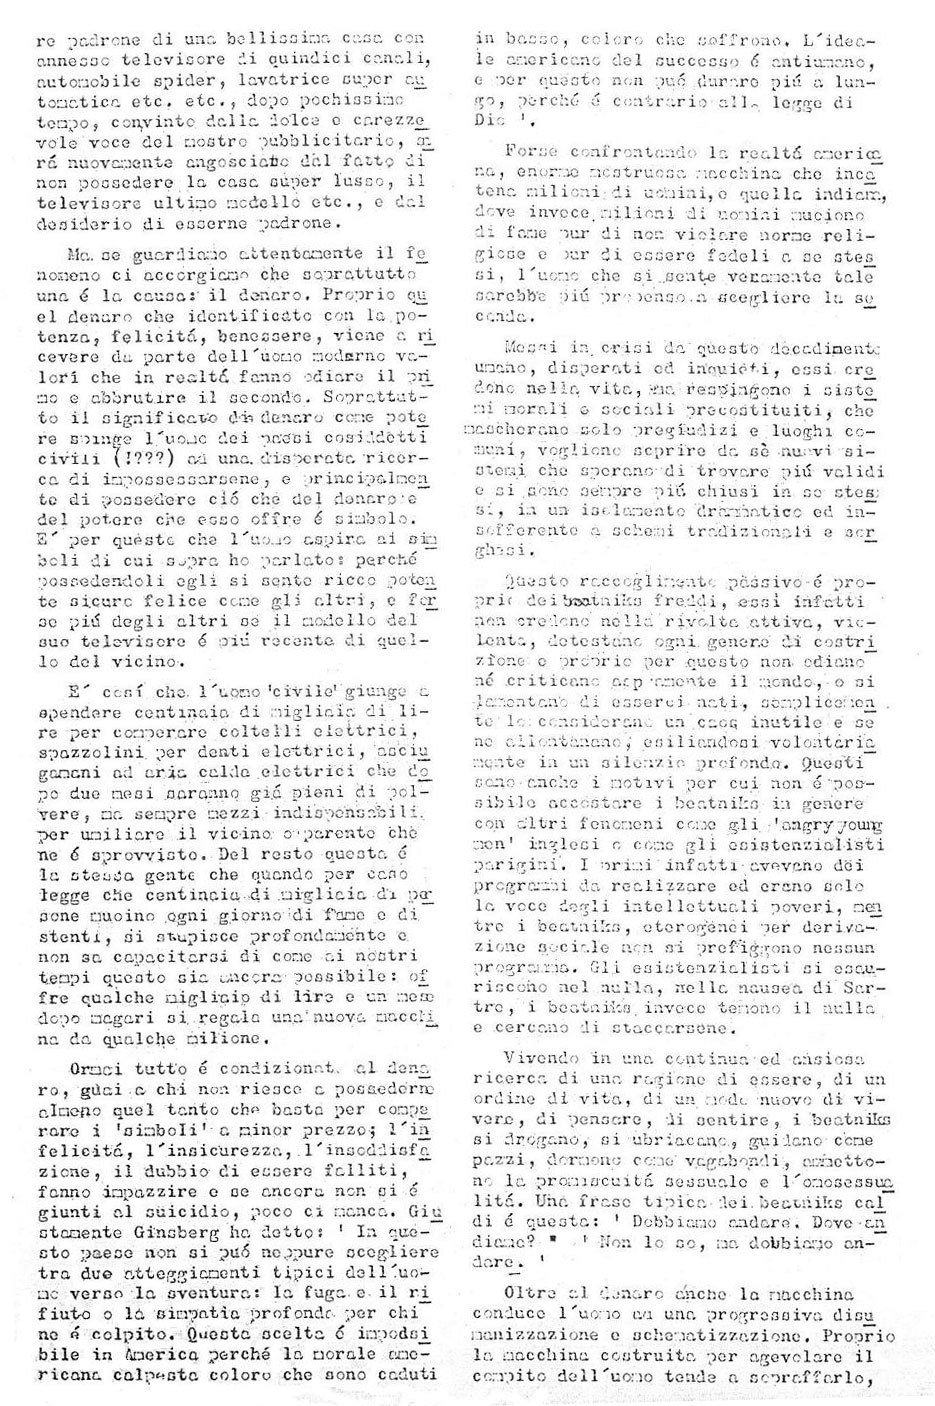 Il primo numero della rivista Mondo Beat - Tiratura copie 860 - Datato 15 novembre 1966